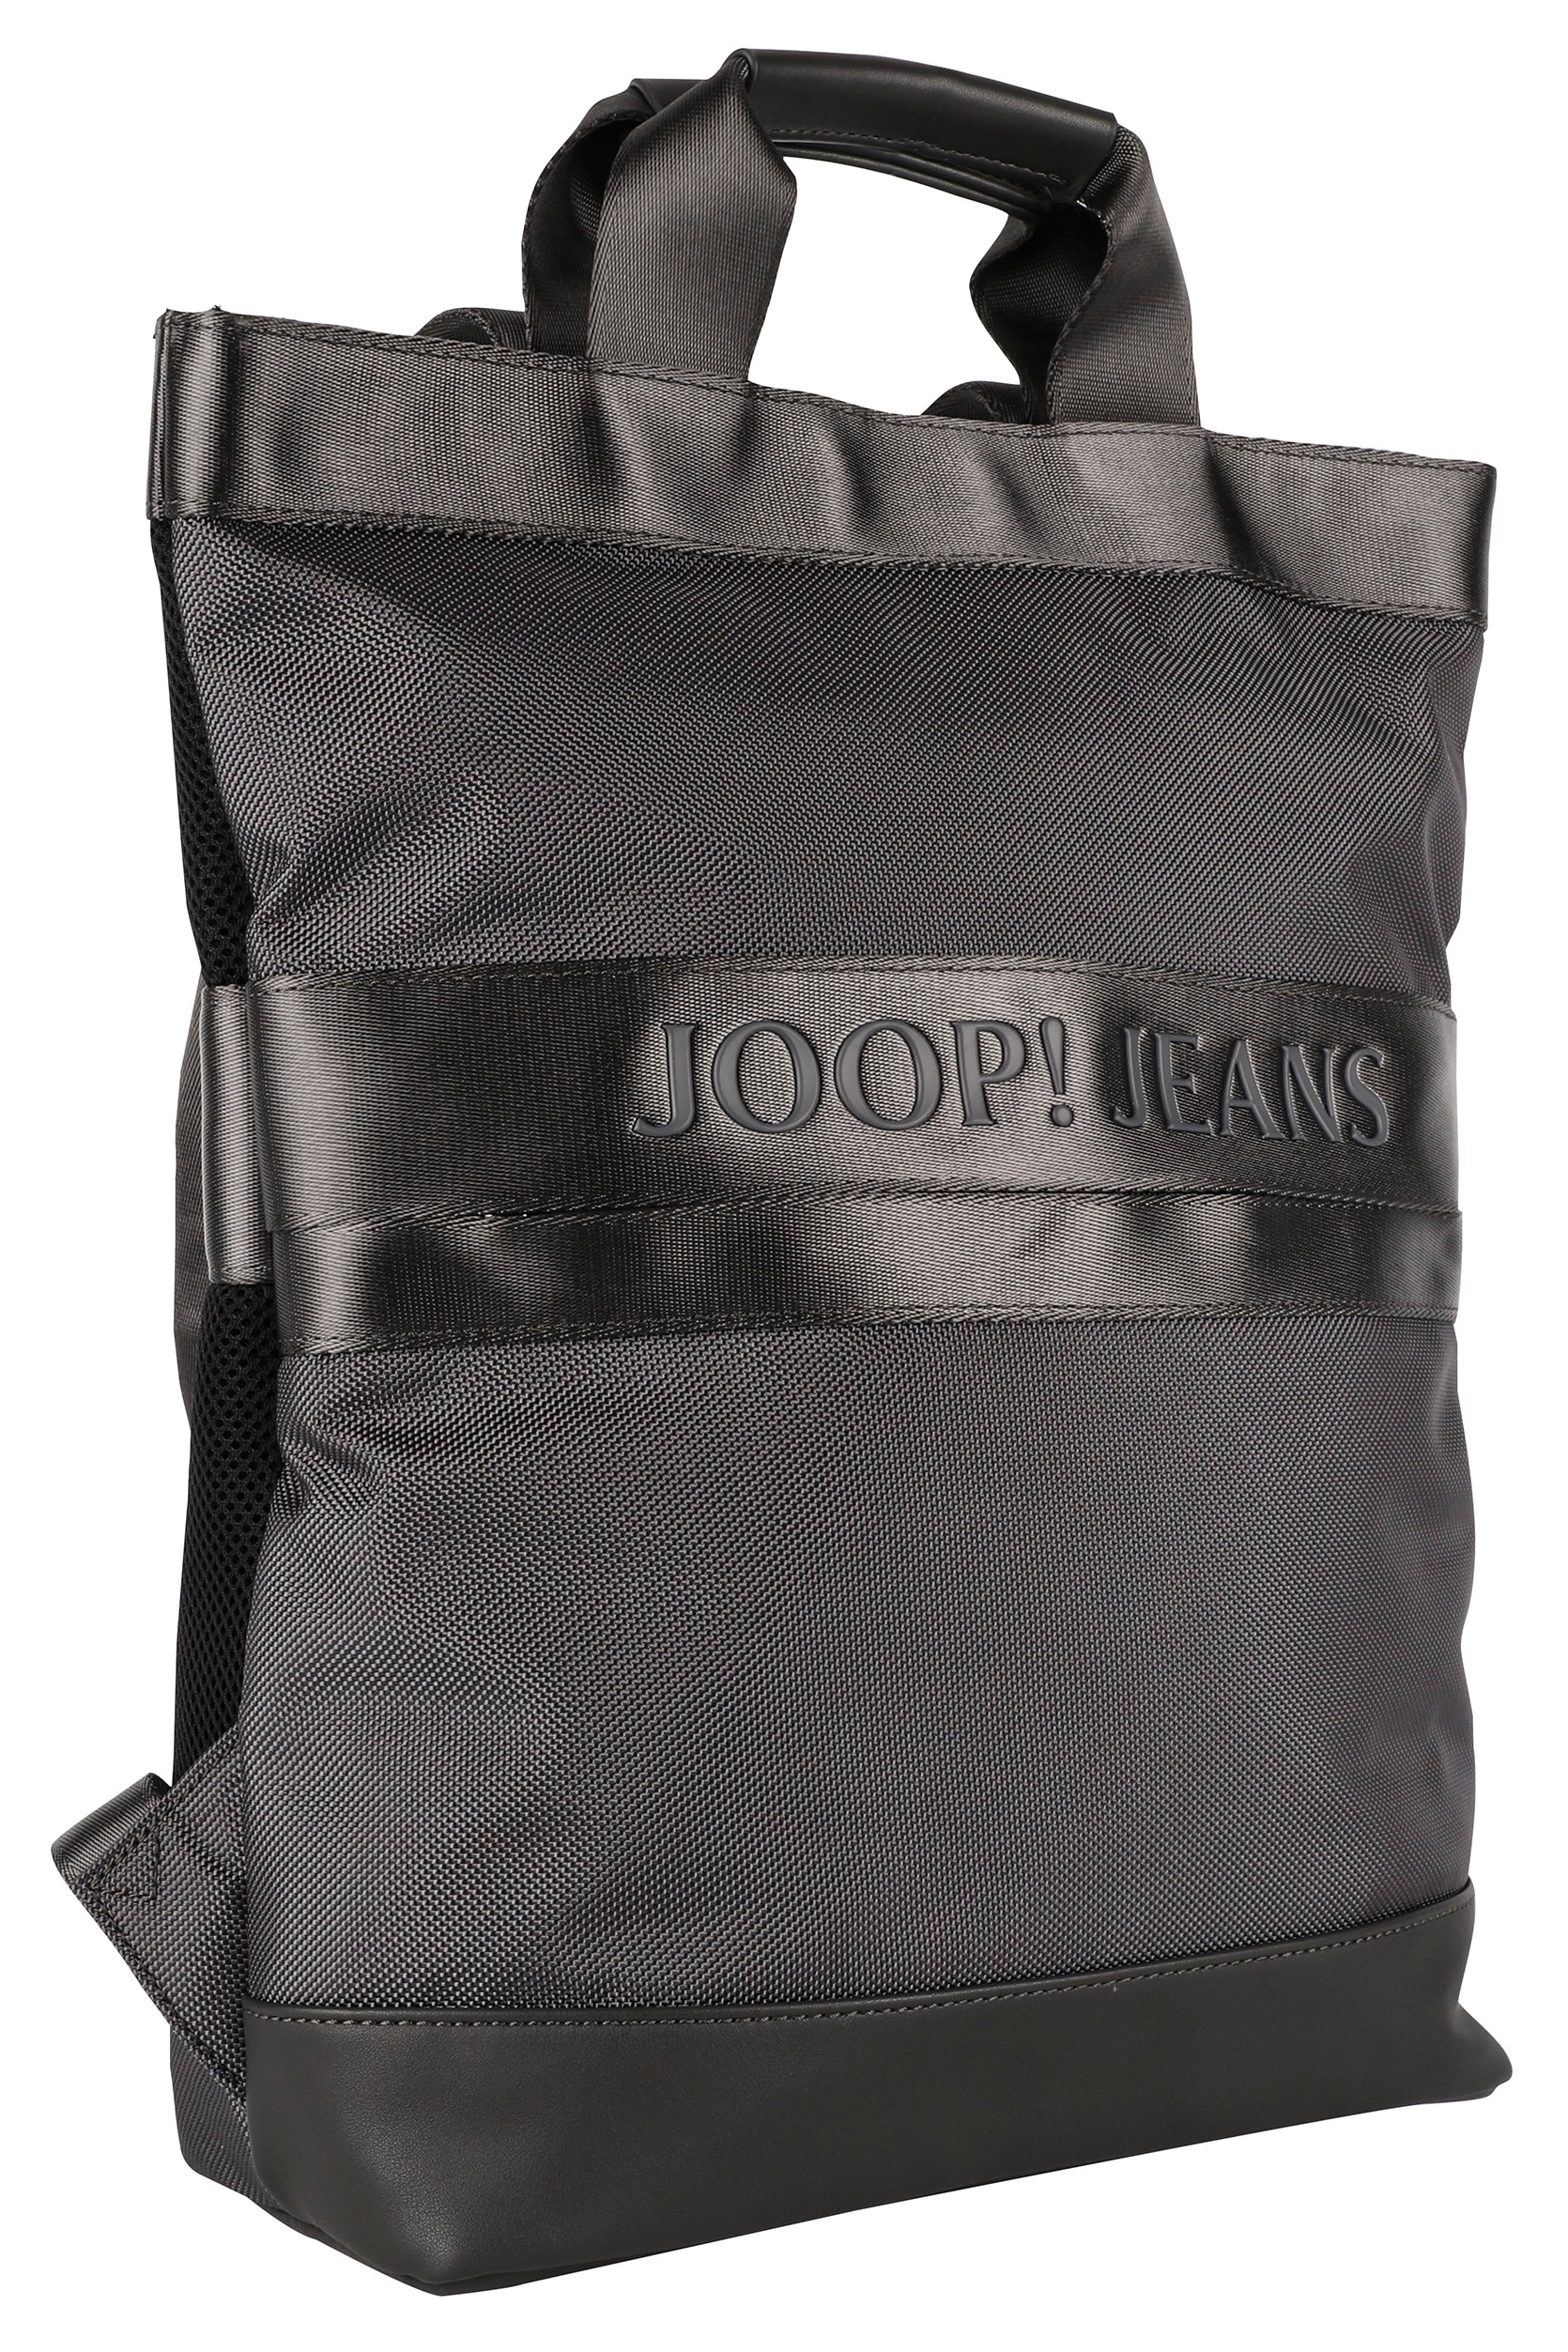 svz«, bestellen »modica falk Reißverschluss- Vortasche Cityrucksack backpack Joop mit Jeans